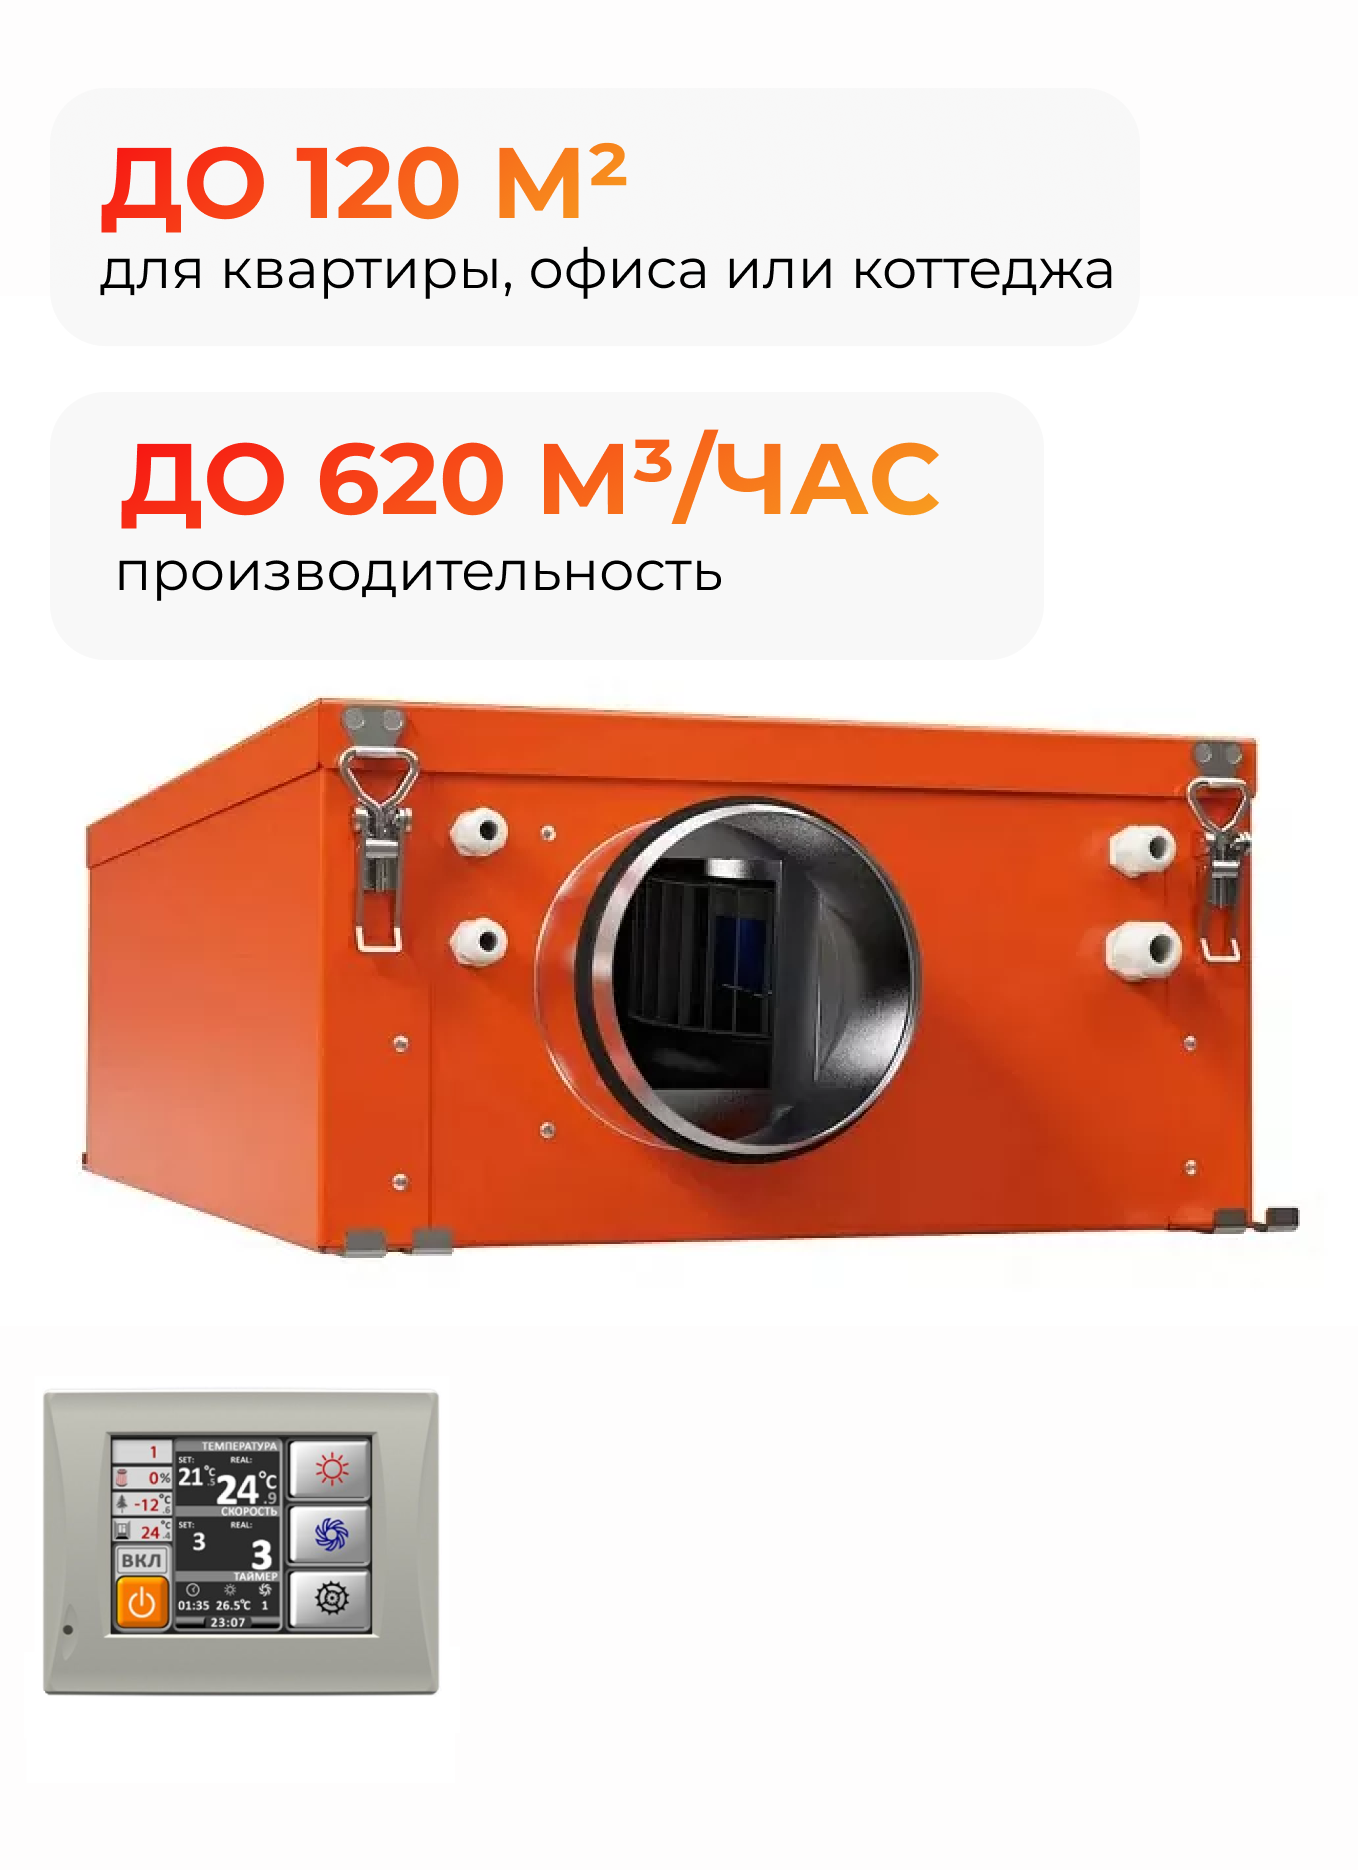 Вентиляционная установка Ventmachine Orange 600 GTC лучшая азбука и счет